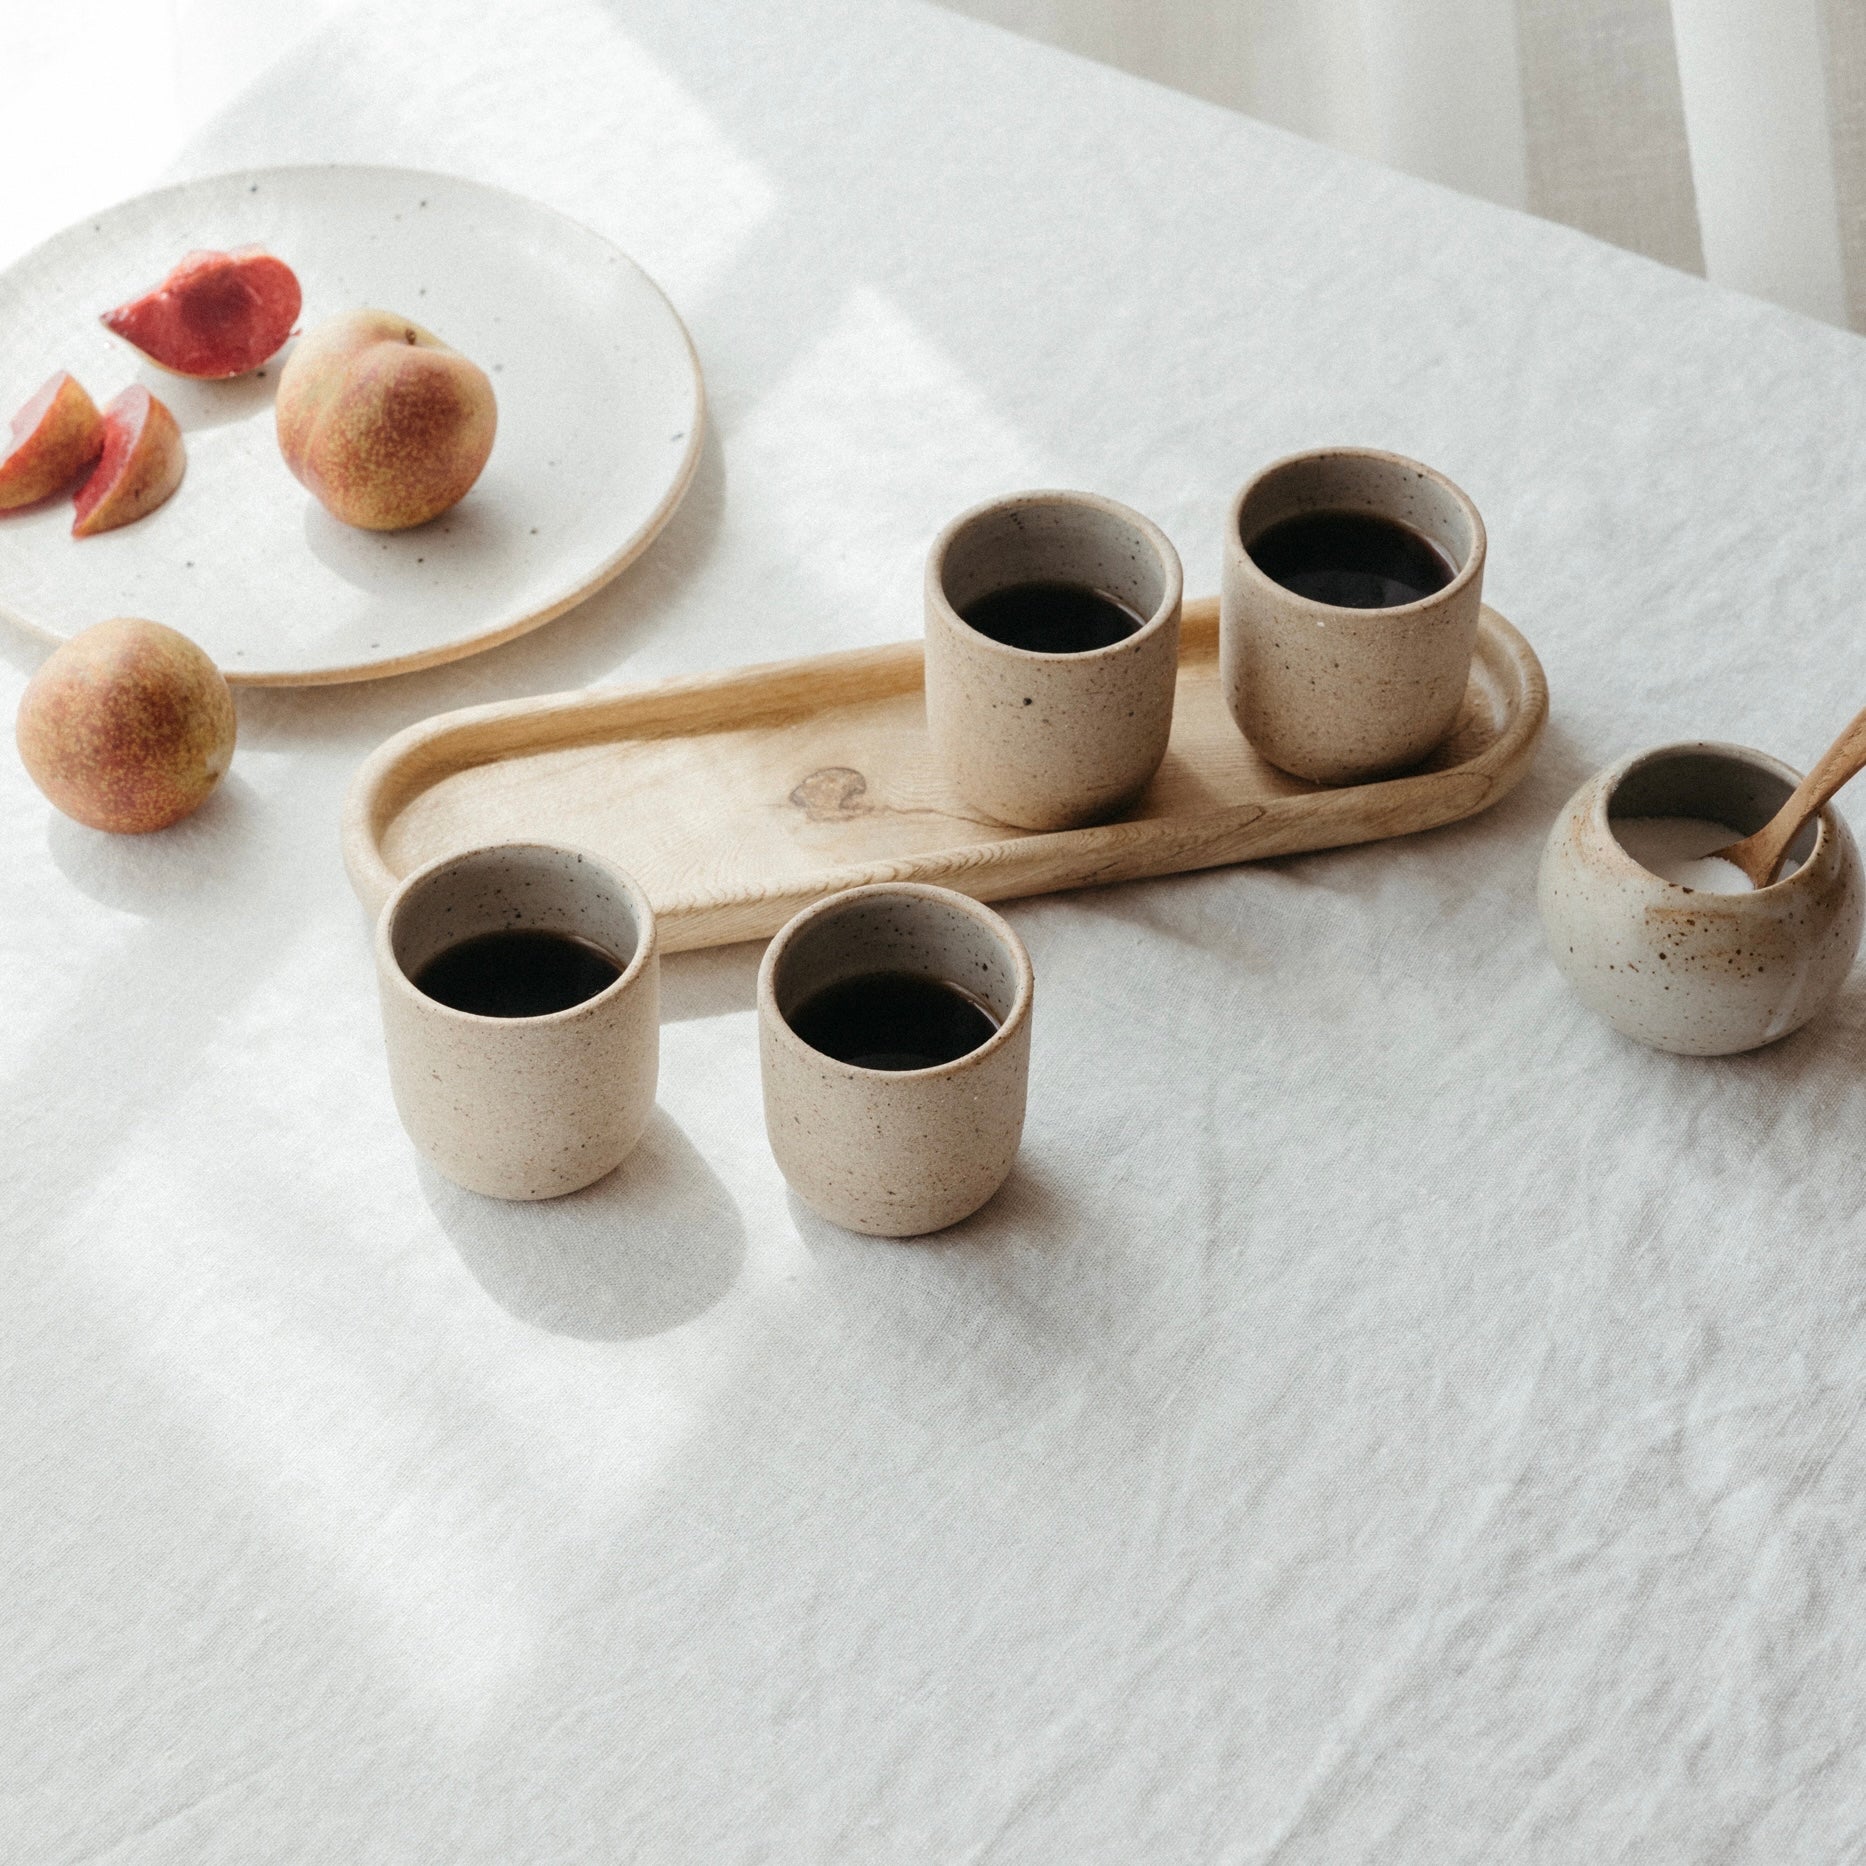 Bene Casa - Ceramic 9 Piece Espresso Set Including Metal Stand - 4 Espresso  Cups (3oz) and 4 Saucers - Stain Resistant Glaze